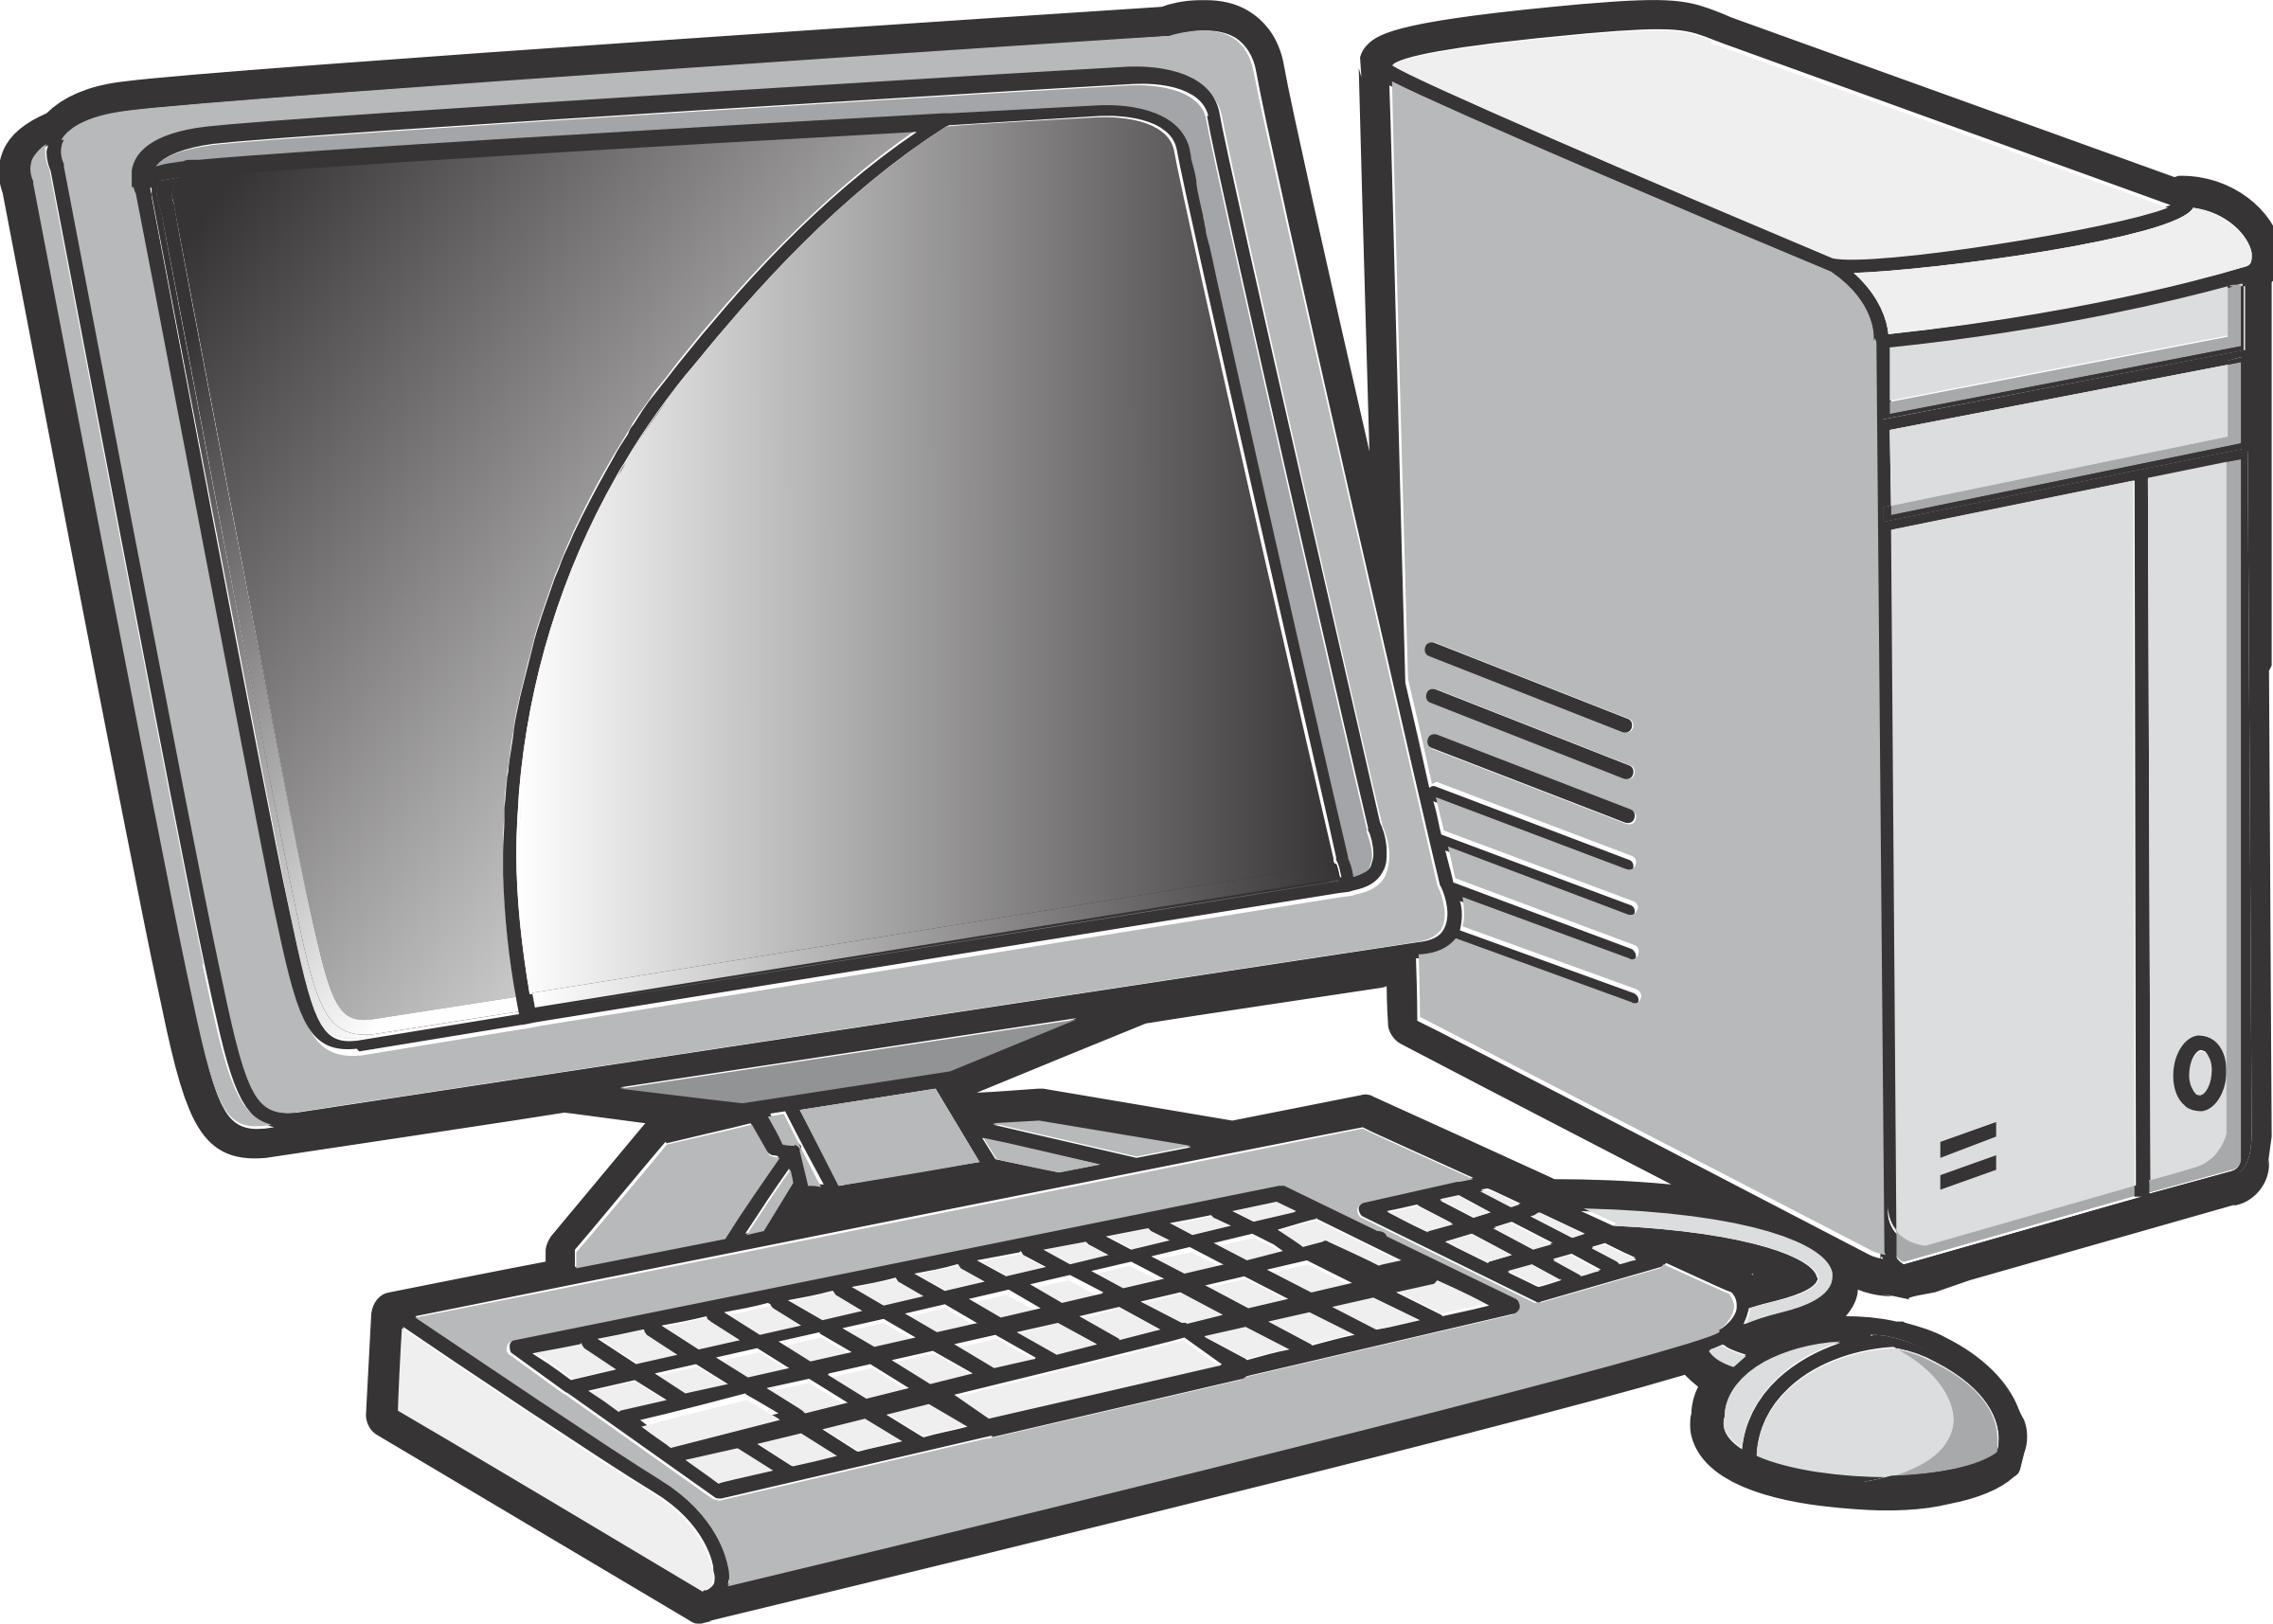 Компьютеризация - Computerization - Компьютер - Компьютерная система - Computer system - Компьютерная техника - Computer equipment